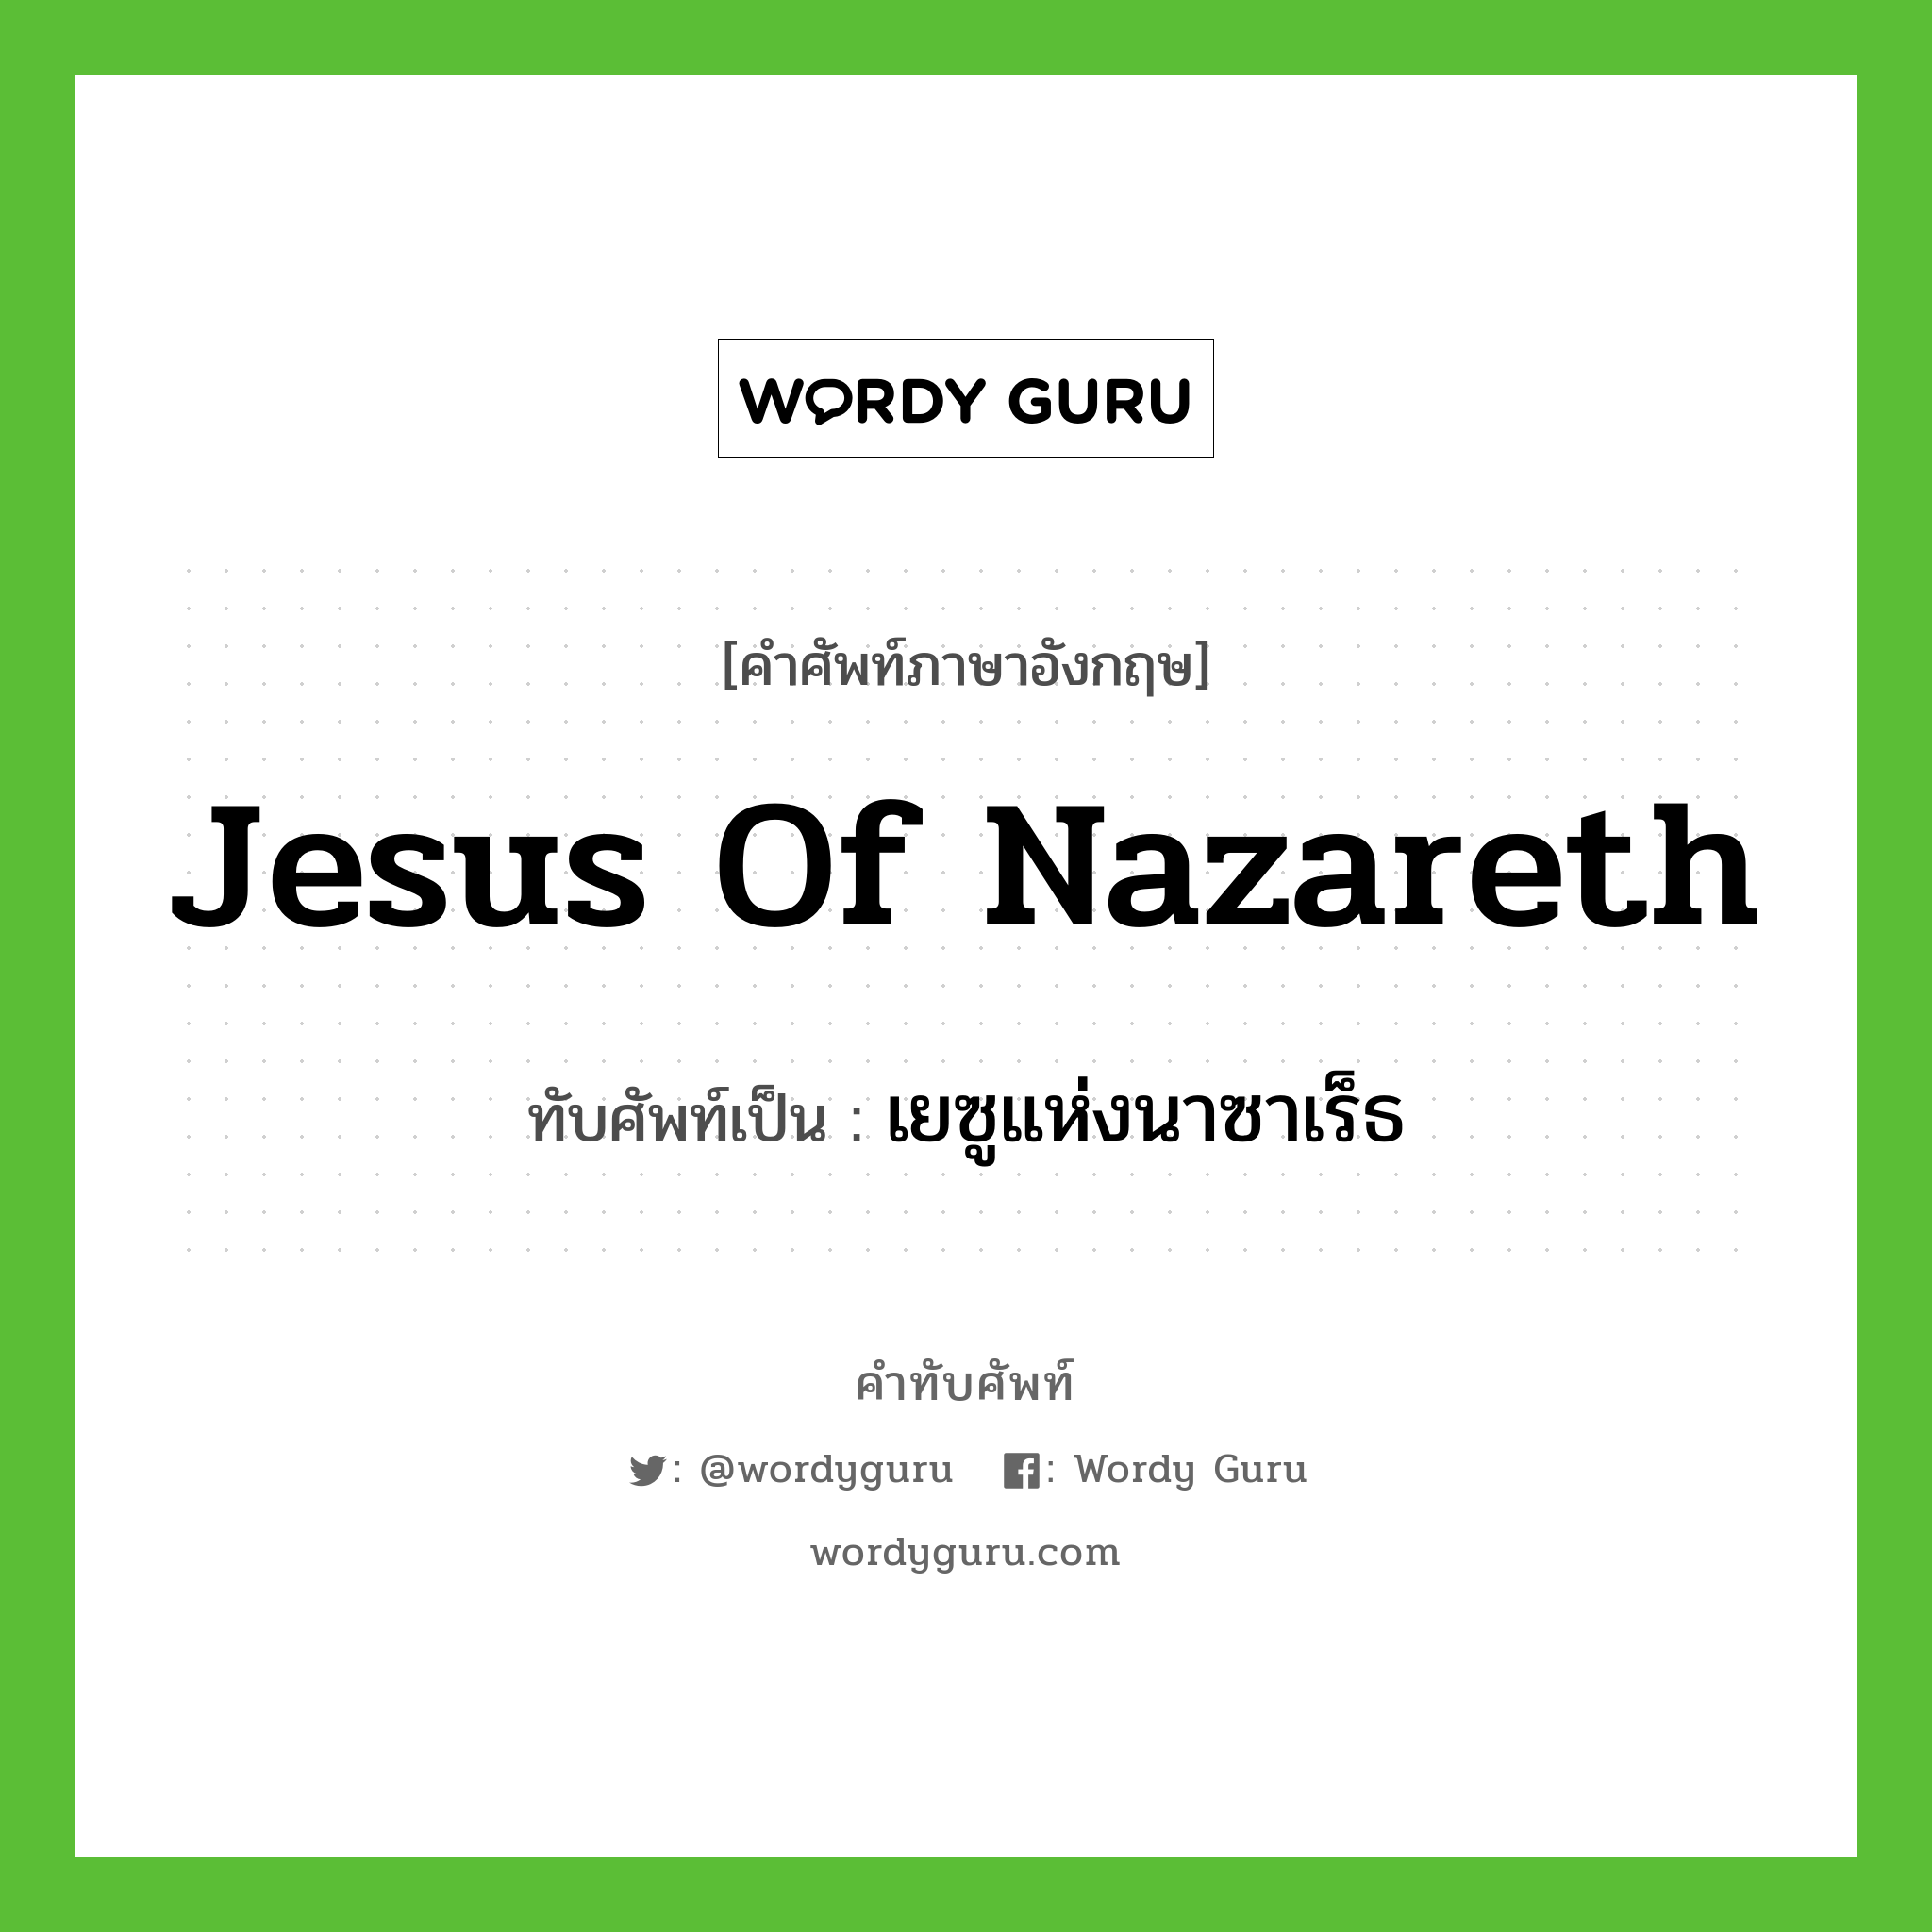 Jesus of Nazareth เขียนเป็นคำไทยว่าอะไร?, คำศัพท์ภาษาอังกฤษ Jesus of Nazareth ทับศัพท์เป็น เยซูแห่งนาซาเร็ธ